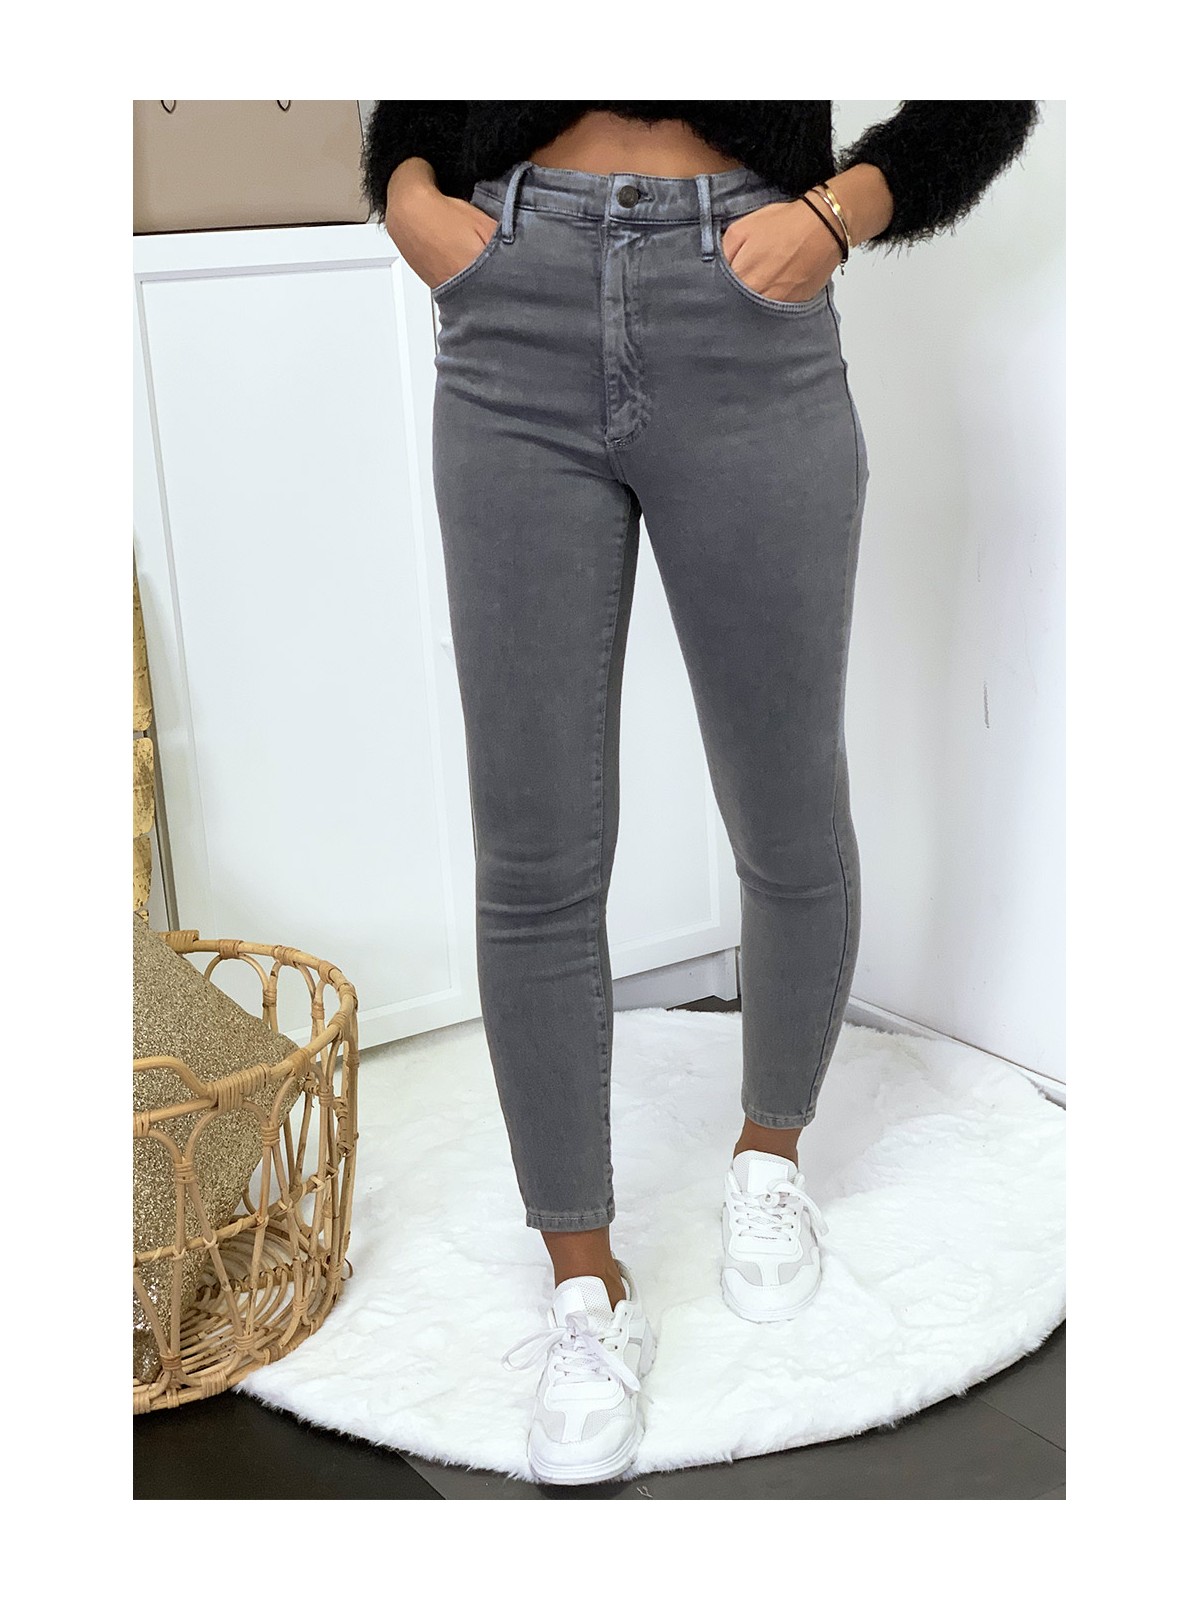 Jeans gris en taille haute très extensible avec poches - 7